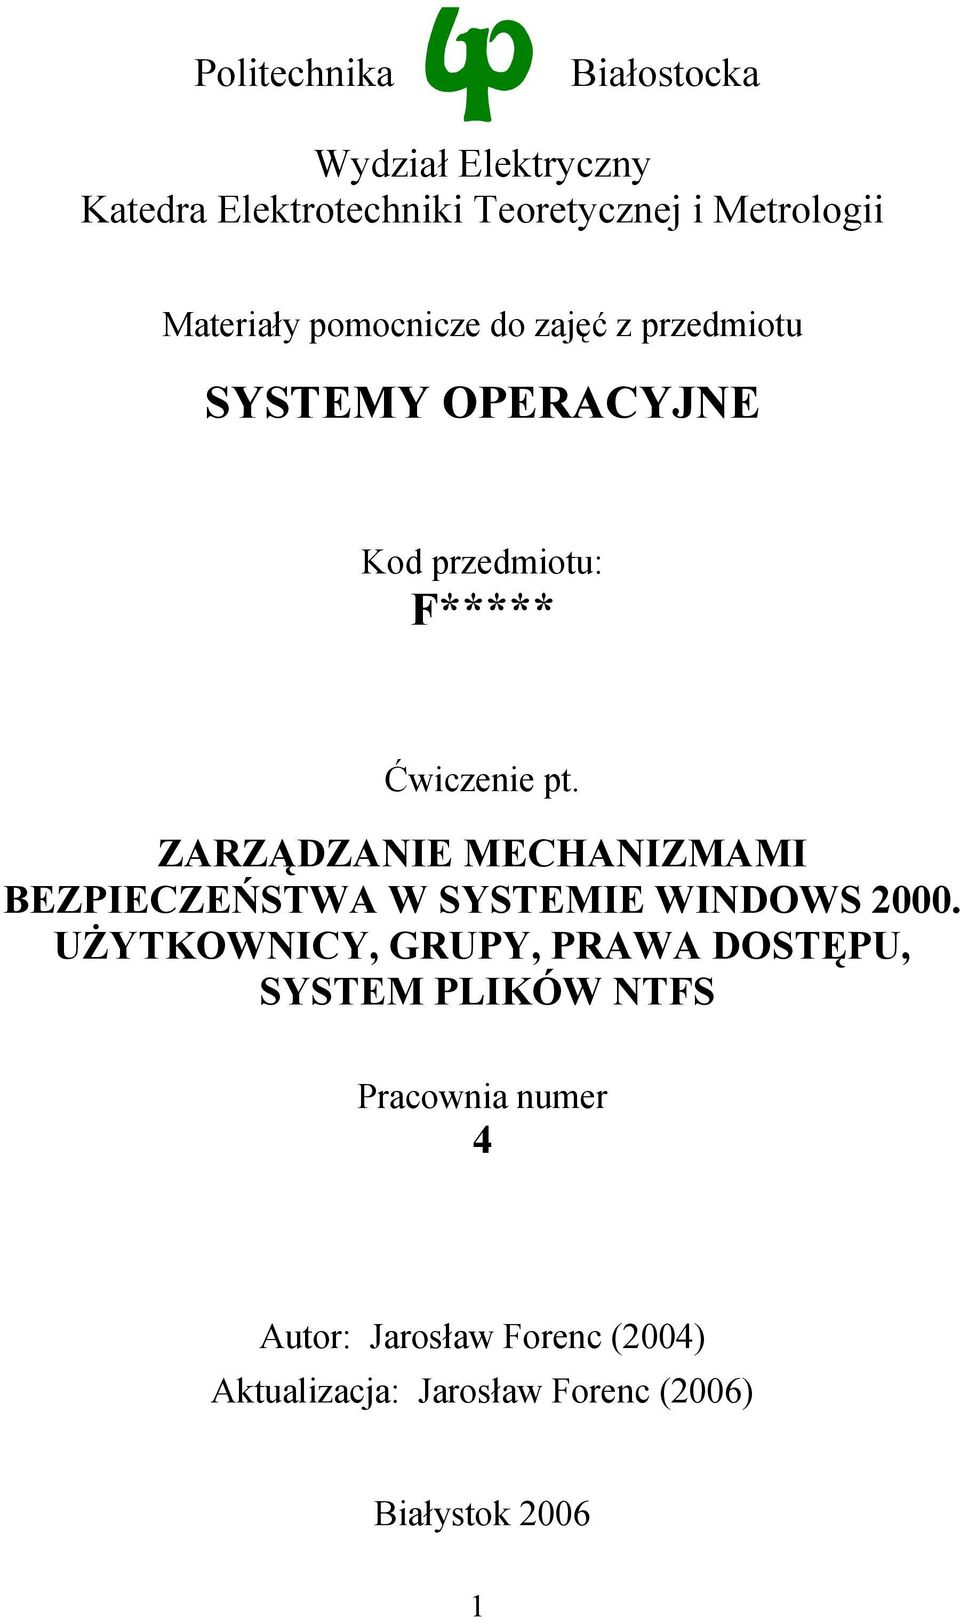 ZARZĄDZANIE MECHANIZMAMI BEZPIECZEŃSTWA W SYSTEMIE WINDOWS 2000.